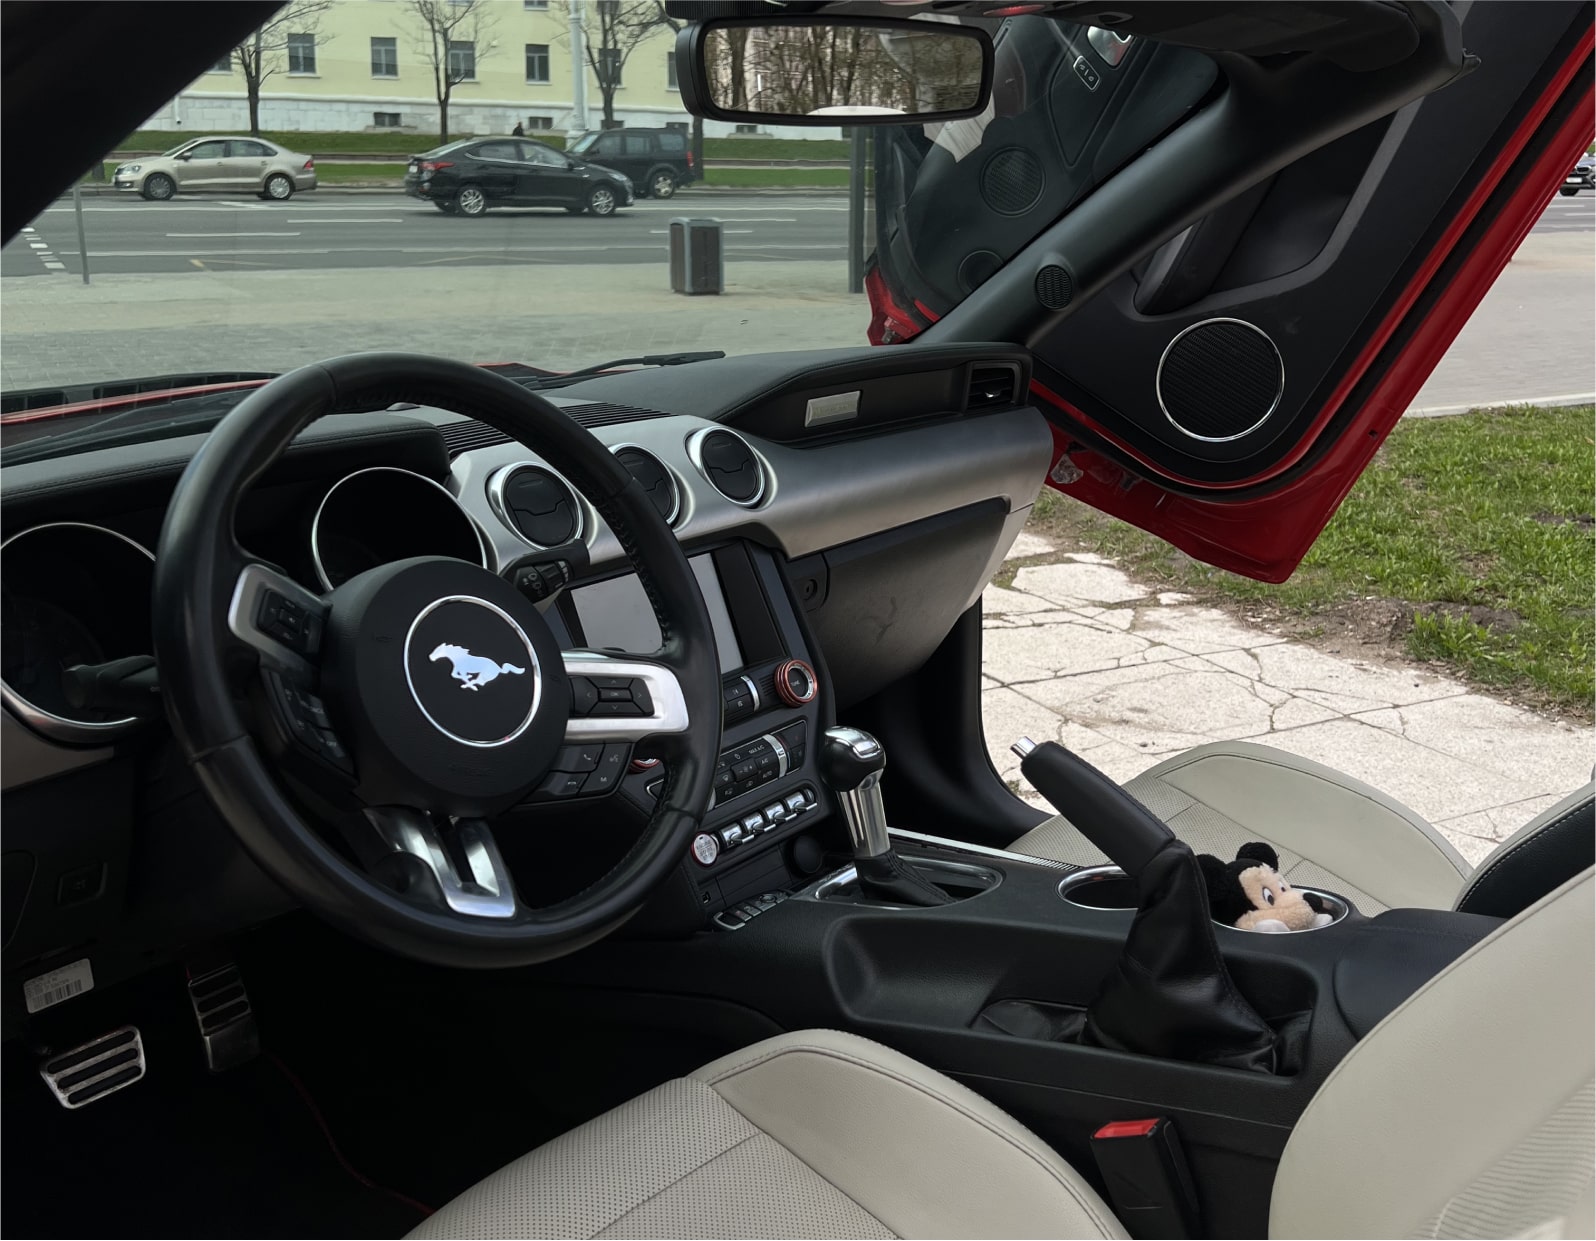 Аренда  Ford Mustang VI S550 Convertible  5 класса 2021 года в городе Минск от 215 $/сутки,  двигатель: Бензин , объем 2.3 AT EcoBoost литров, КАСКО (Мультидрайв), без водителя, вид 4 - West Group